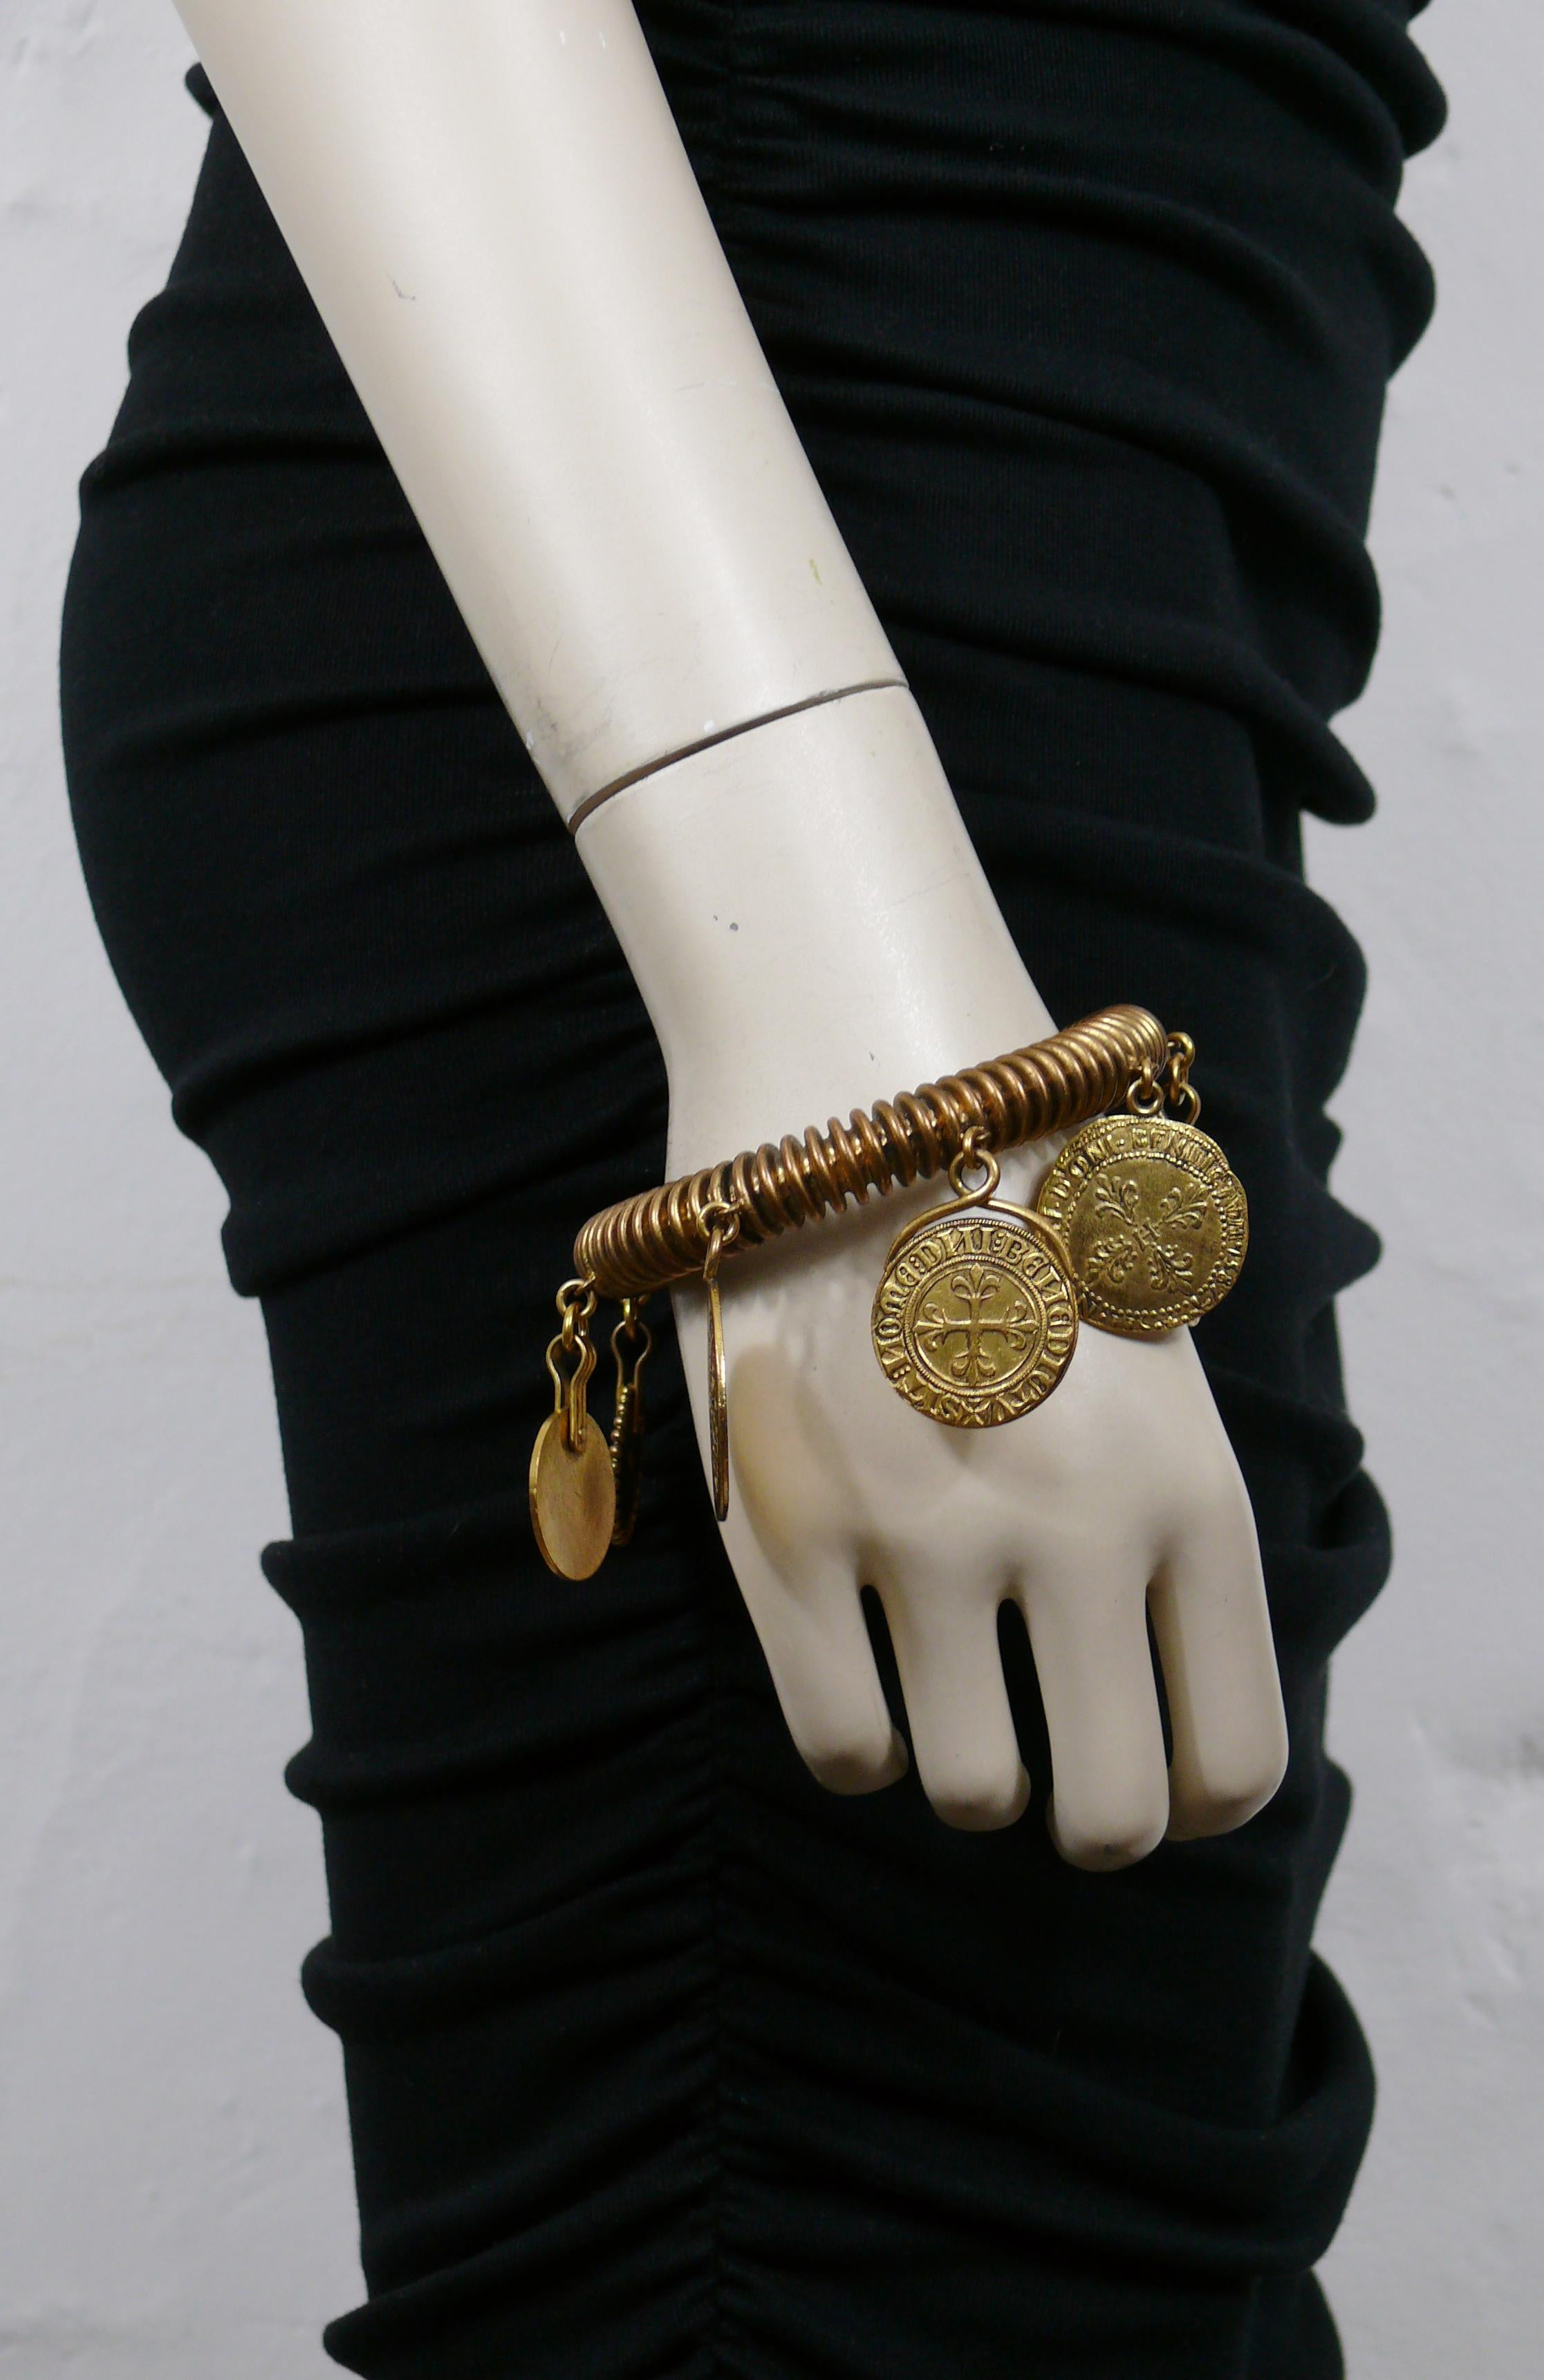 YVES SAINT LAURENT vintage bracelet rigide en fil de fer, ton bronze antique, orné de divers charms en forme de médailles.

S'enfile (pas de fermeture).

YSL en relief sur le revers d'une médaille.

Mesures indicatives : circonférence intérieure